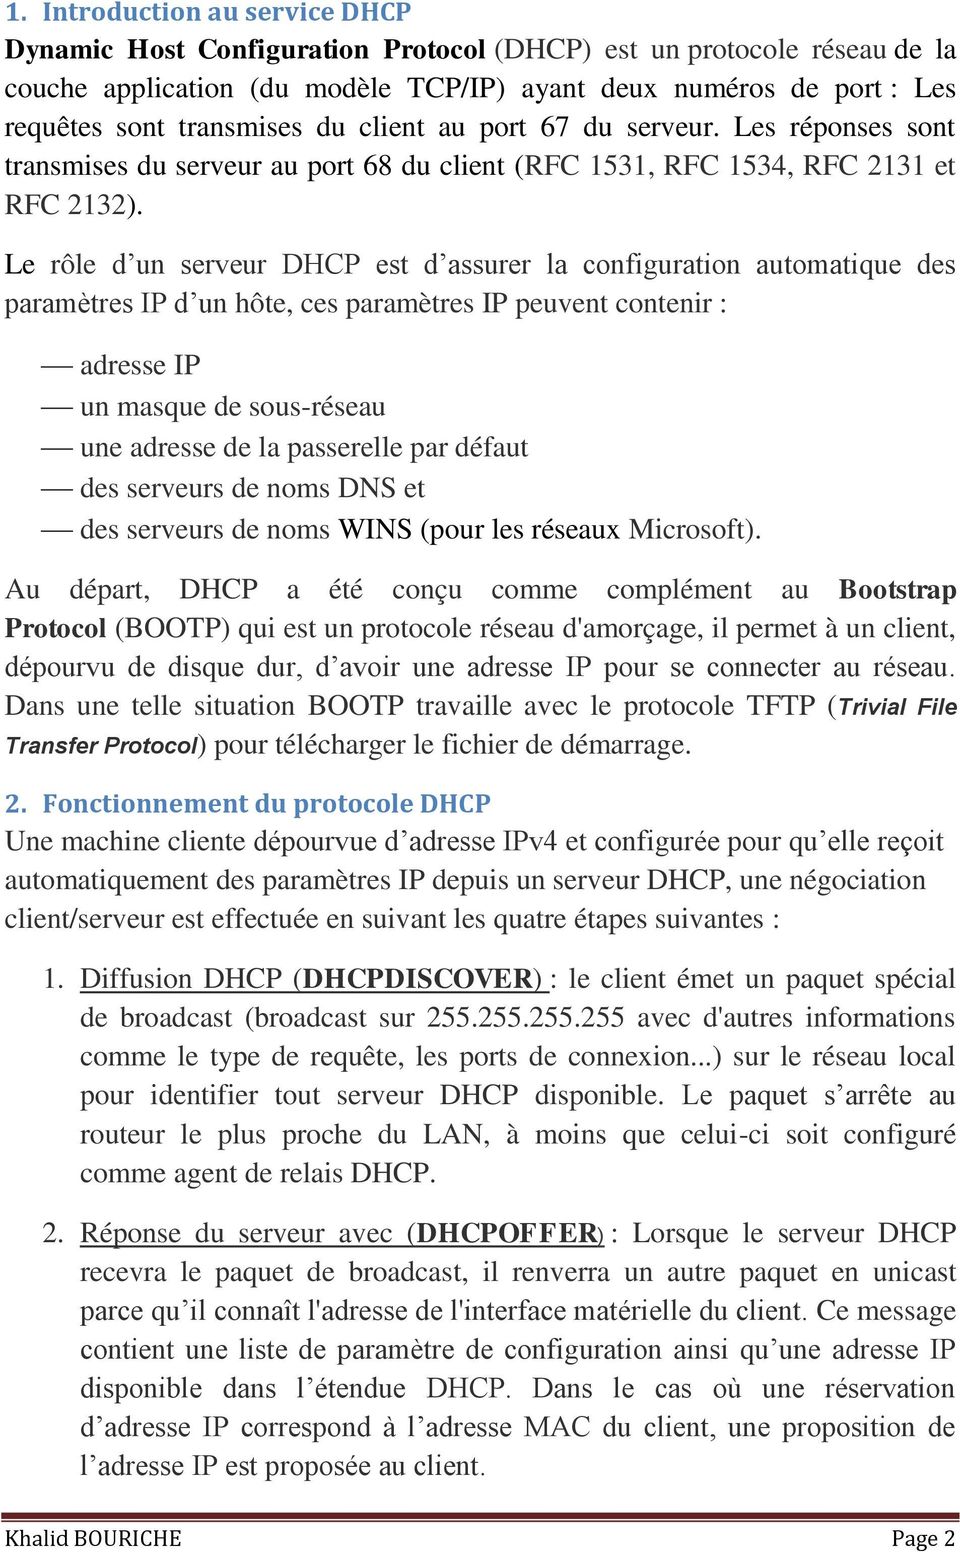 Le rôle d un serveur DHCP est d assurer la configuration automatique des paramètres IP d un hôte, ces paramètres IP peuvent contenir : adresse IP un masque de sous-réseau une adresse de la passerelle